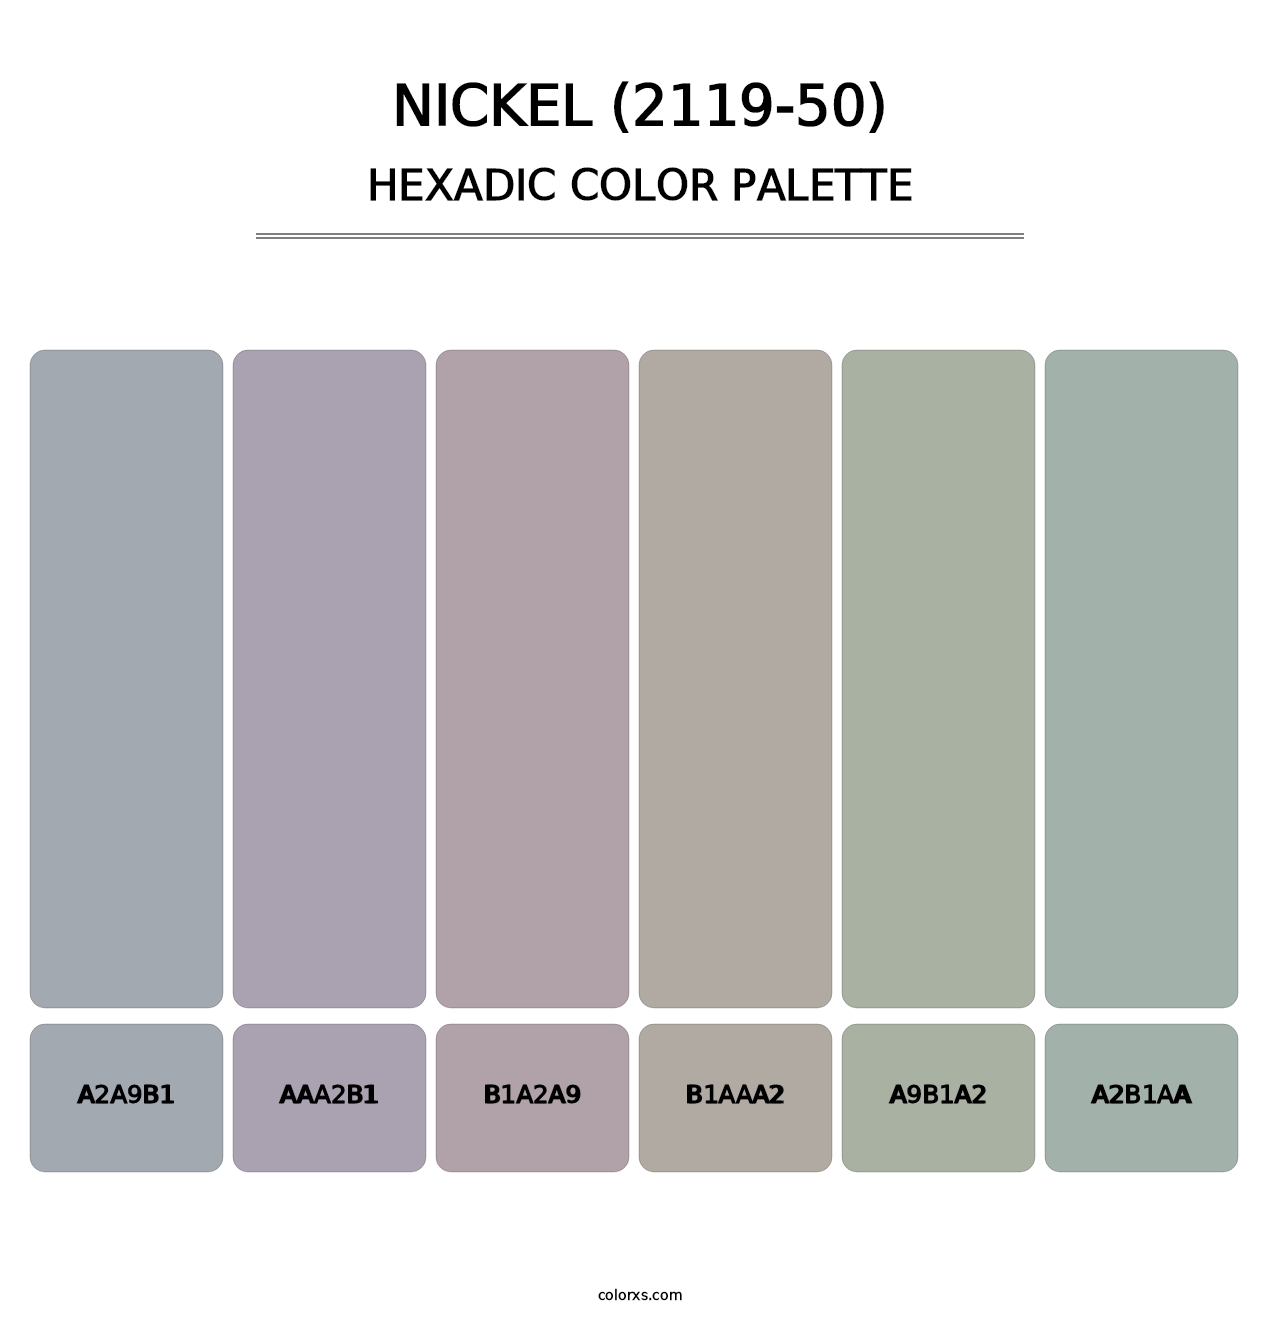 Nickel (2119-50) - Hexadic Color Palette